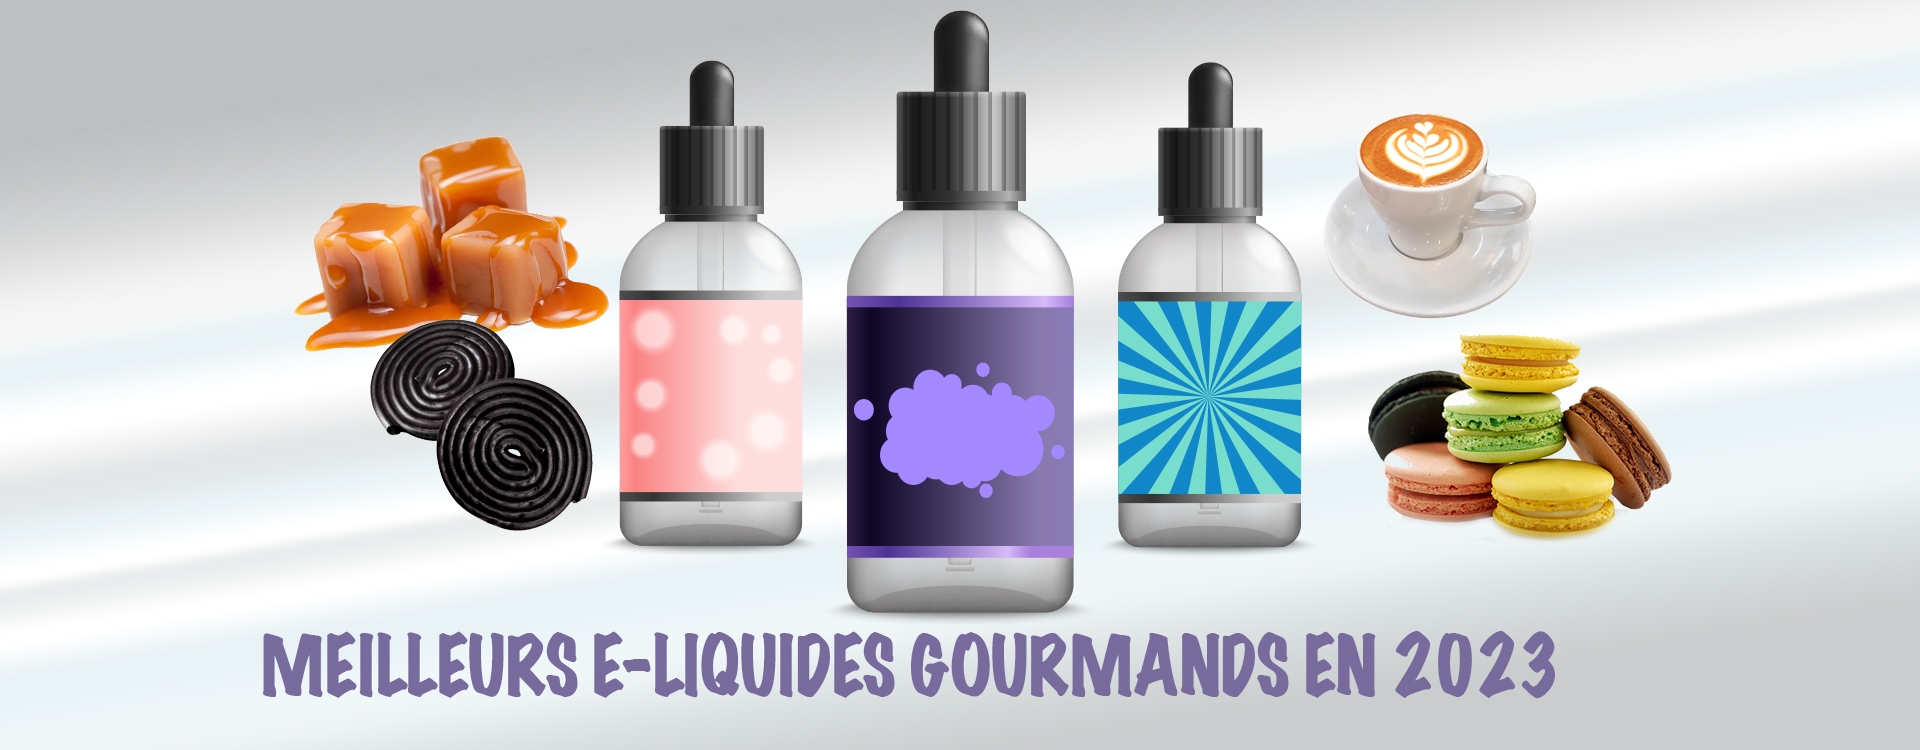 Quels sont les meilleurs e-liquides gourmands de 2023 ?